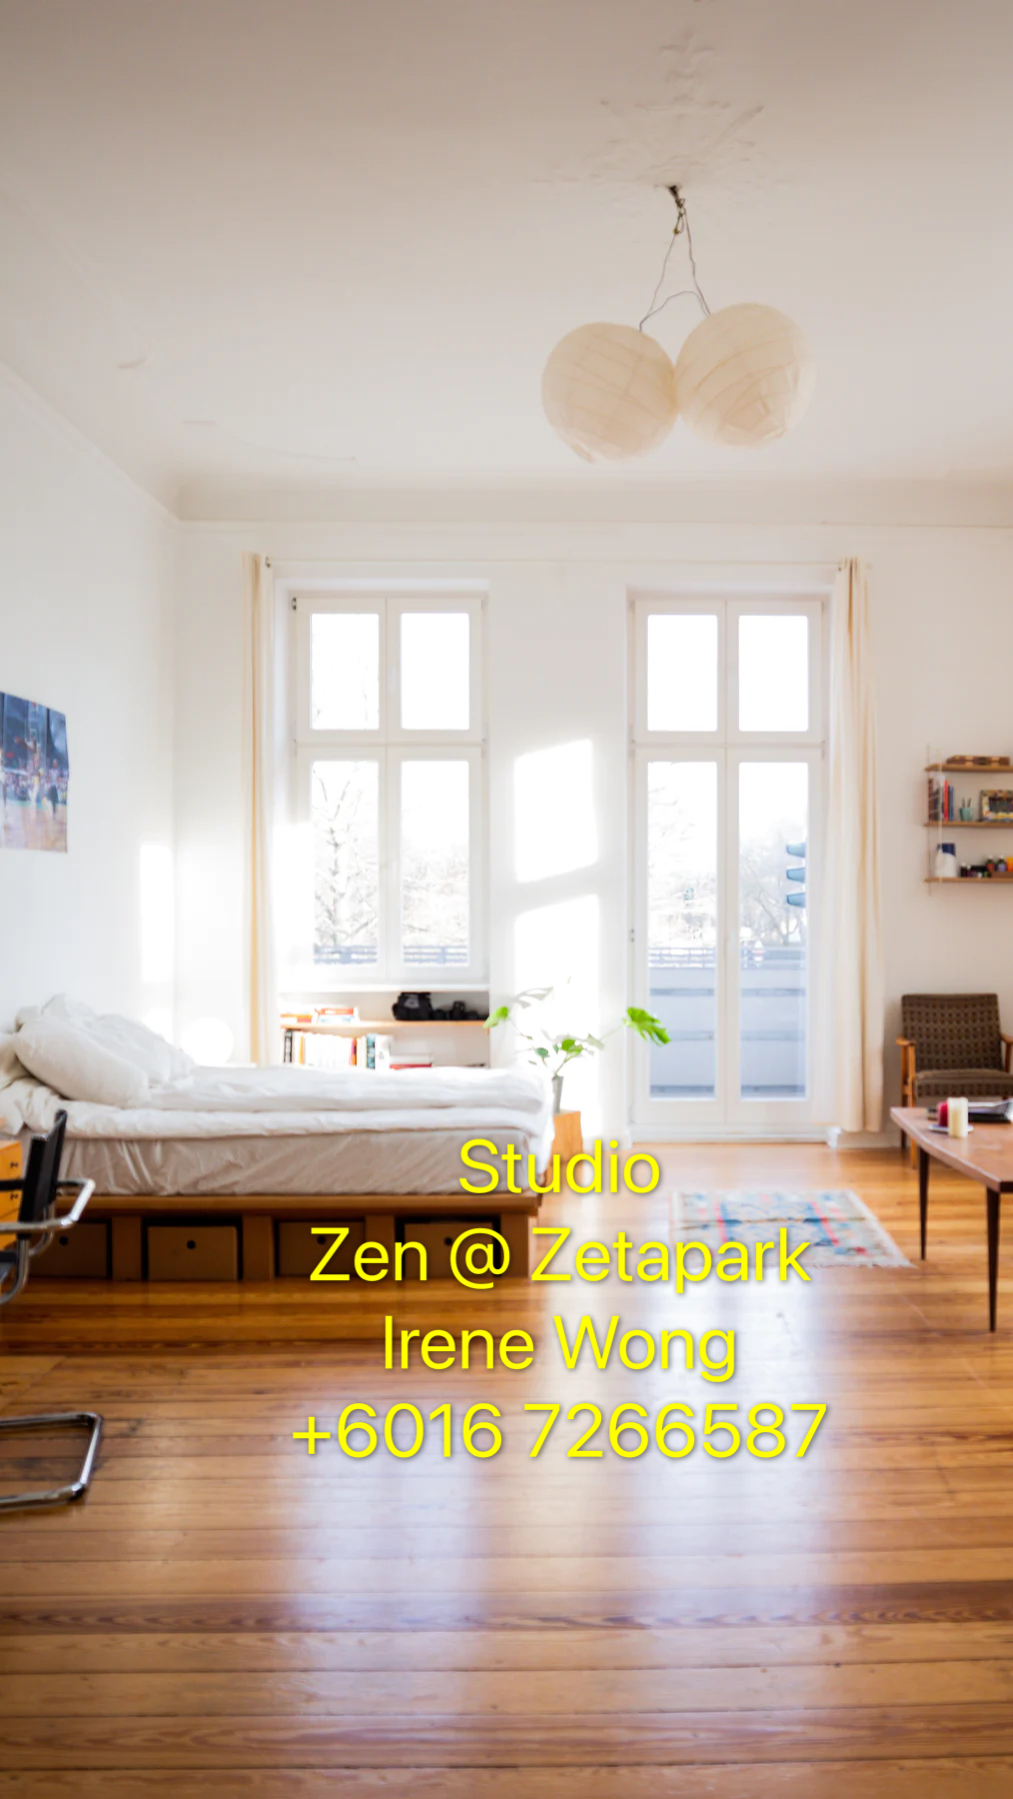 Studio unit @ Zen @ Zetapark